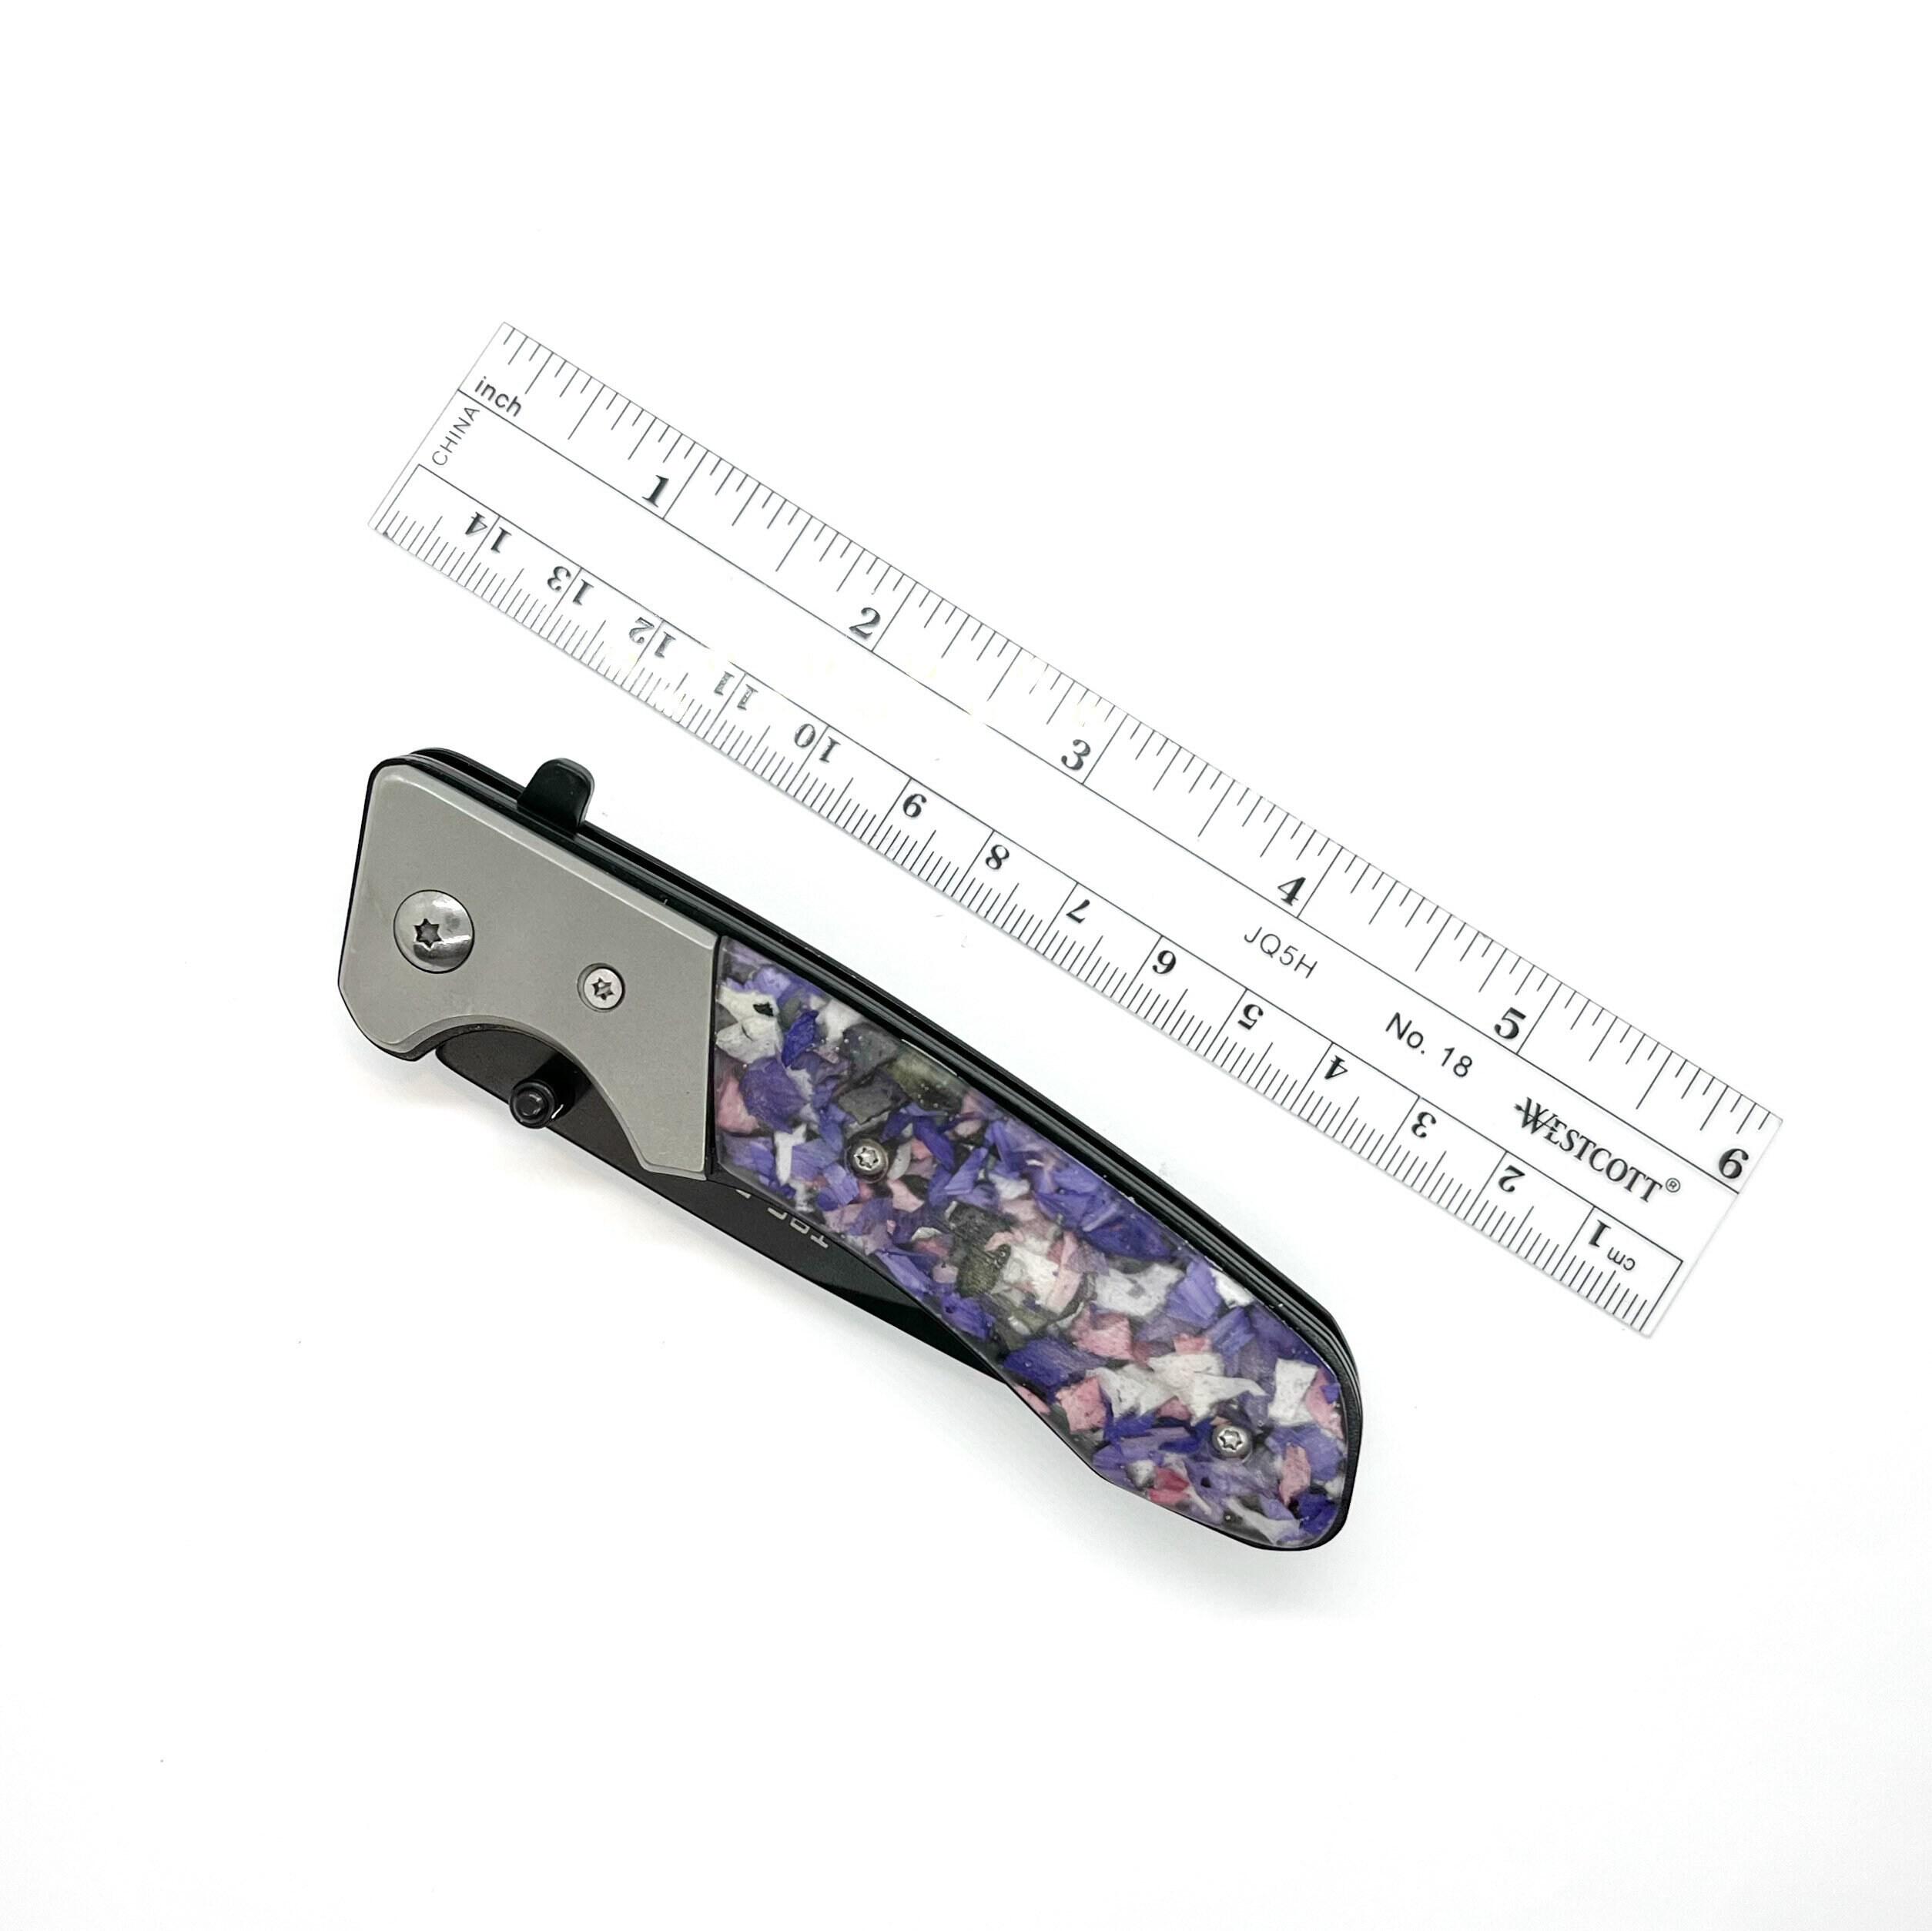 Resin Memorial Flower Knife 